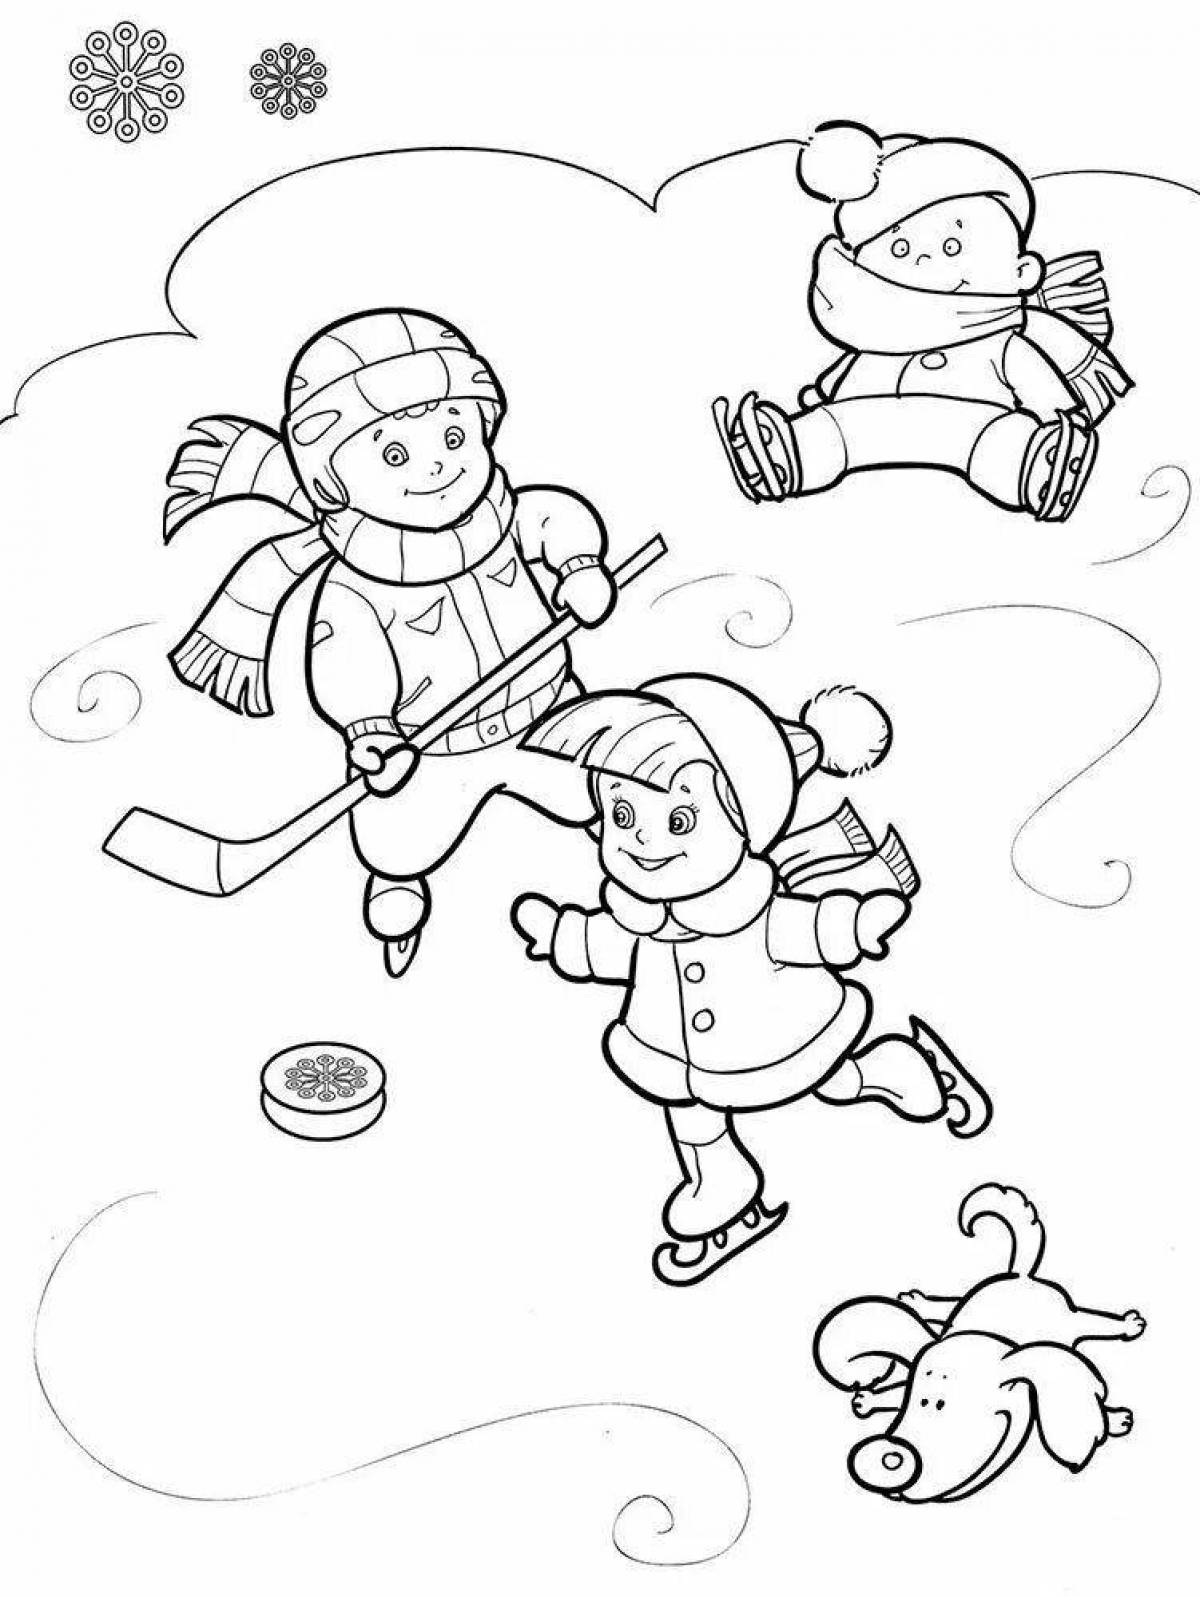 Happy winter fun coloring page